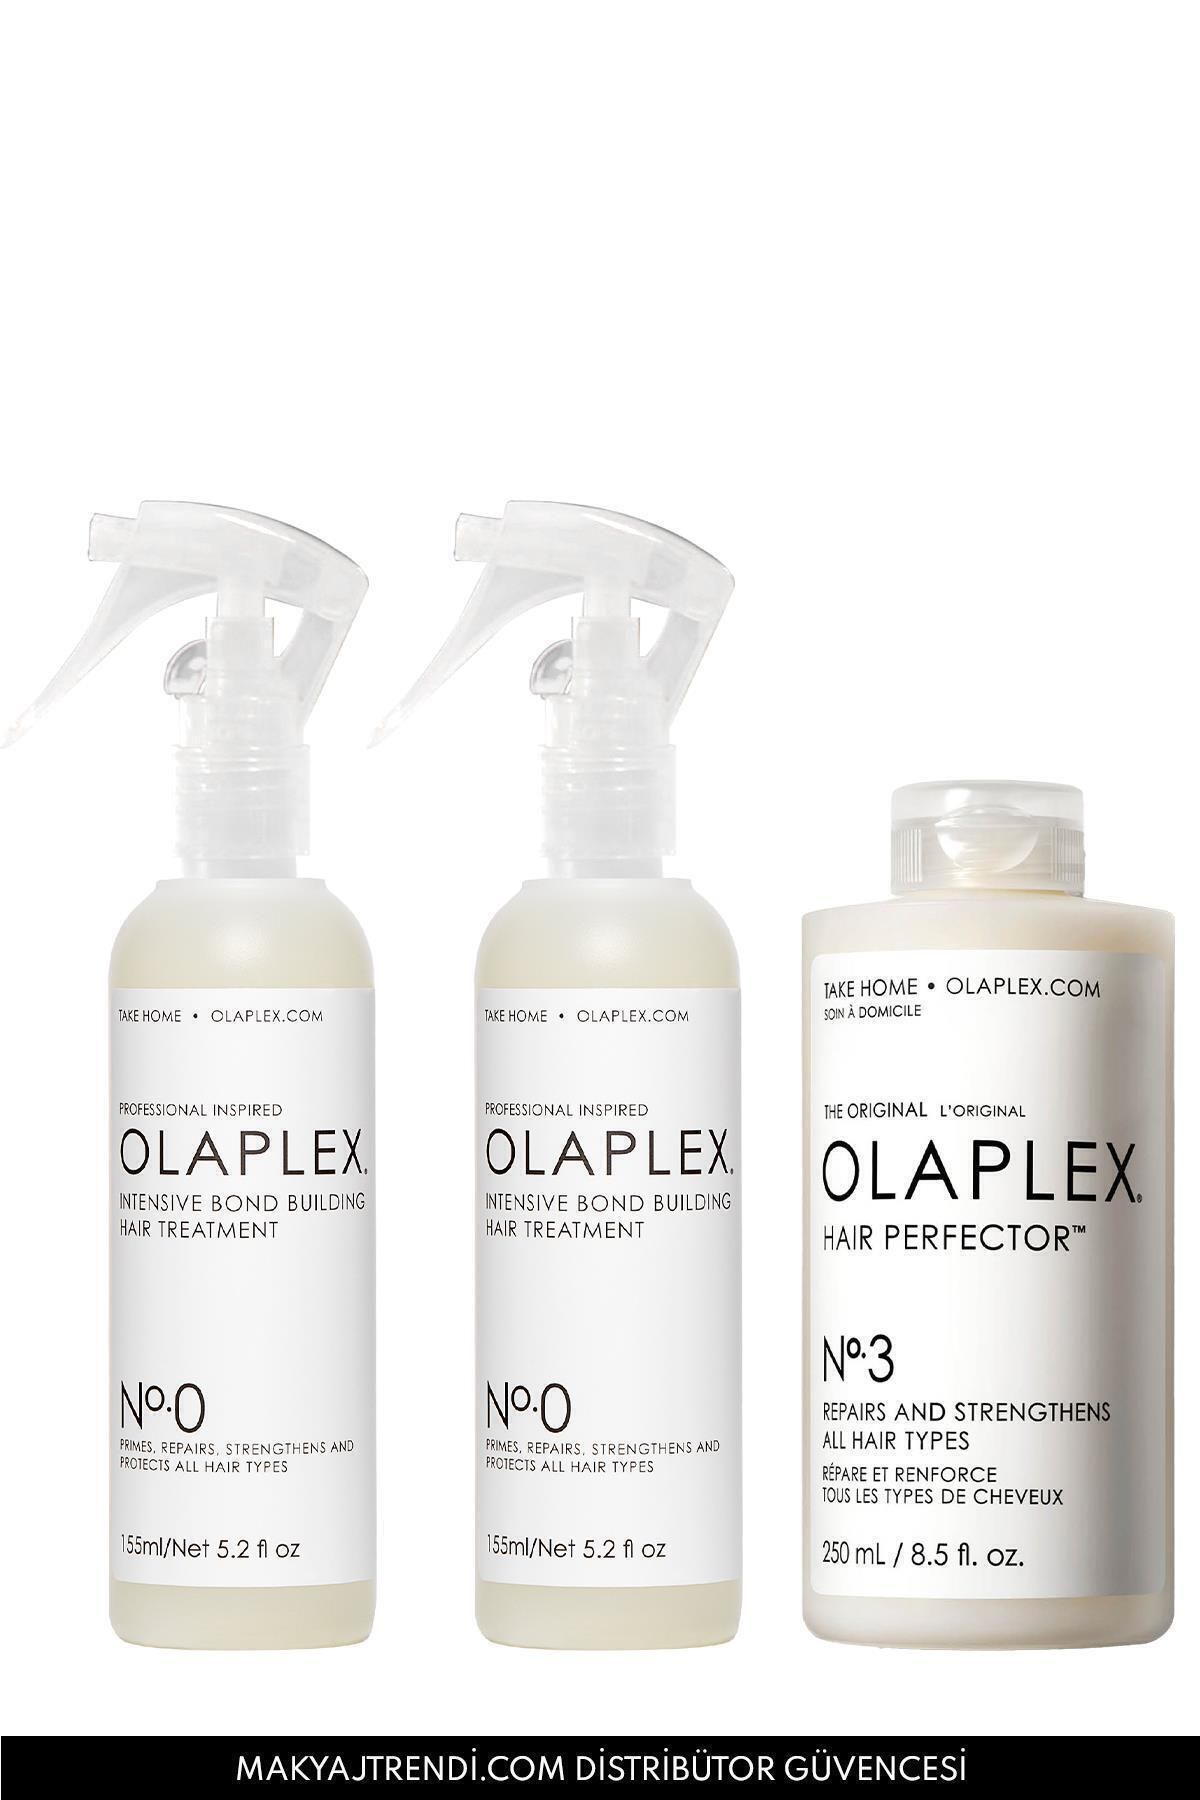 Olaplex Rebuild Damaged Hair Kit - Saçtaki Hasarı Onaran & Bağ Güçlendirici Üçlü Bakım Seti